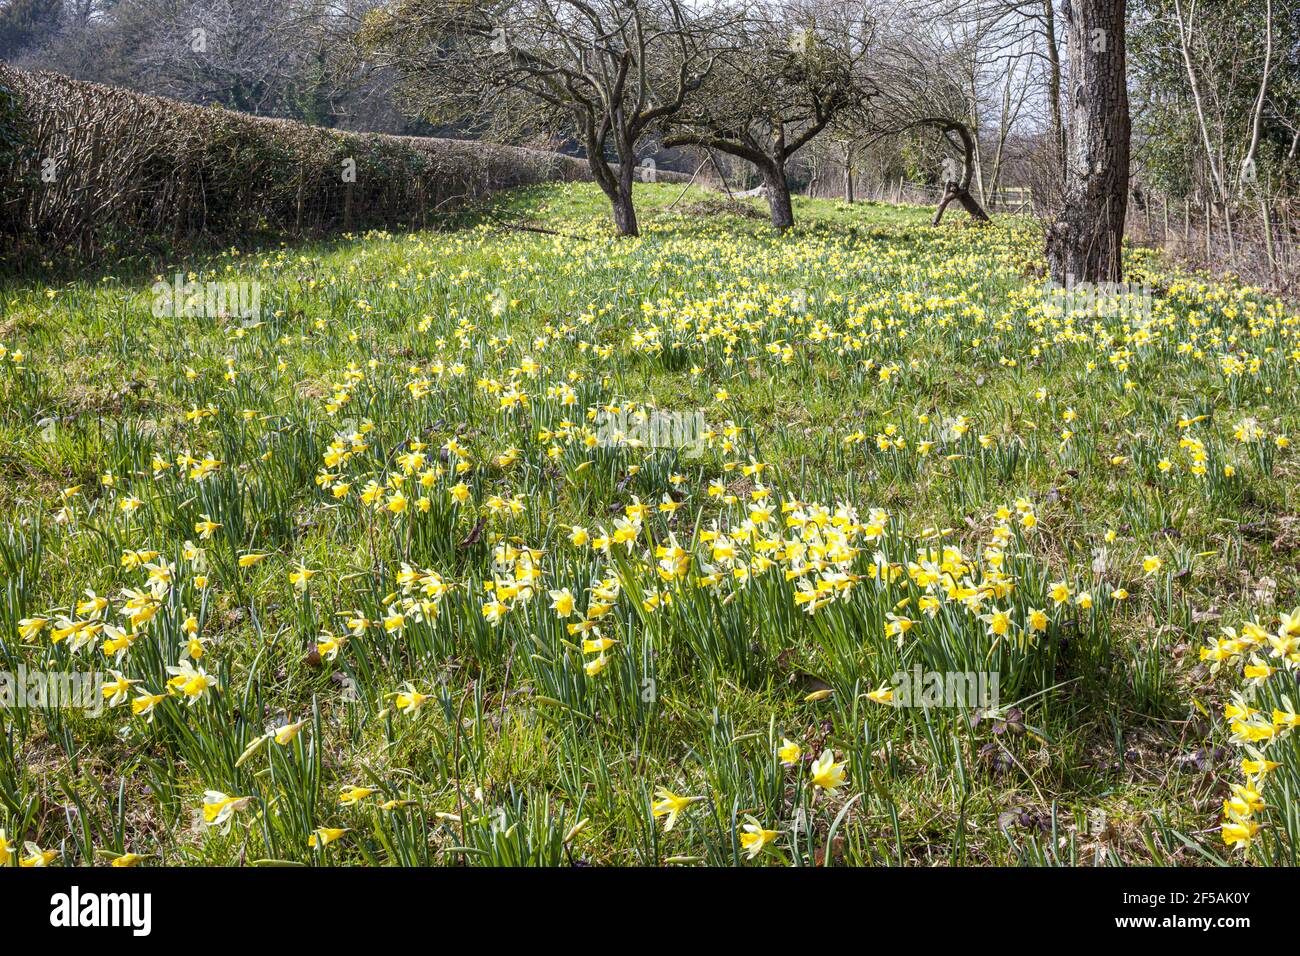 Les jonquilles sauvages (Narcisse pseudoquescisse) poussent au printemps dans la réserve naturelle de Gwen & Vera's Fields, près de Dymock, Gloucestershire, Royaume-Uni Banque D'Images